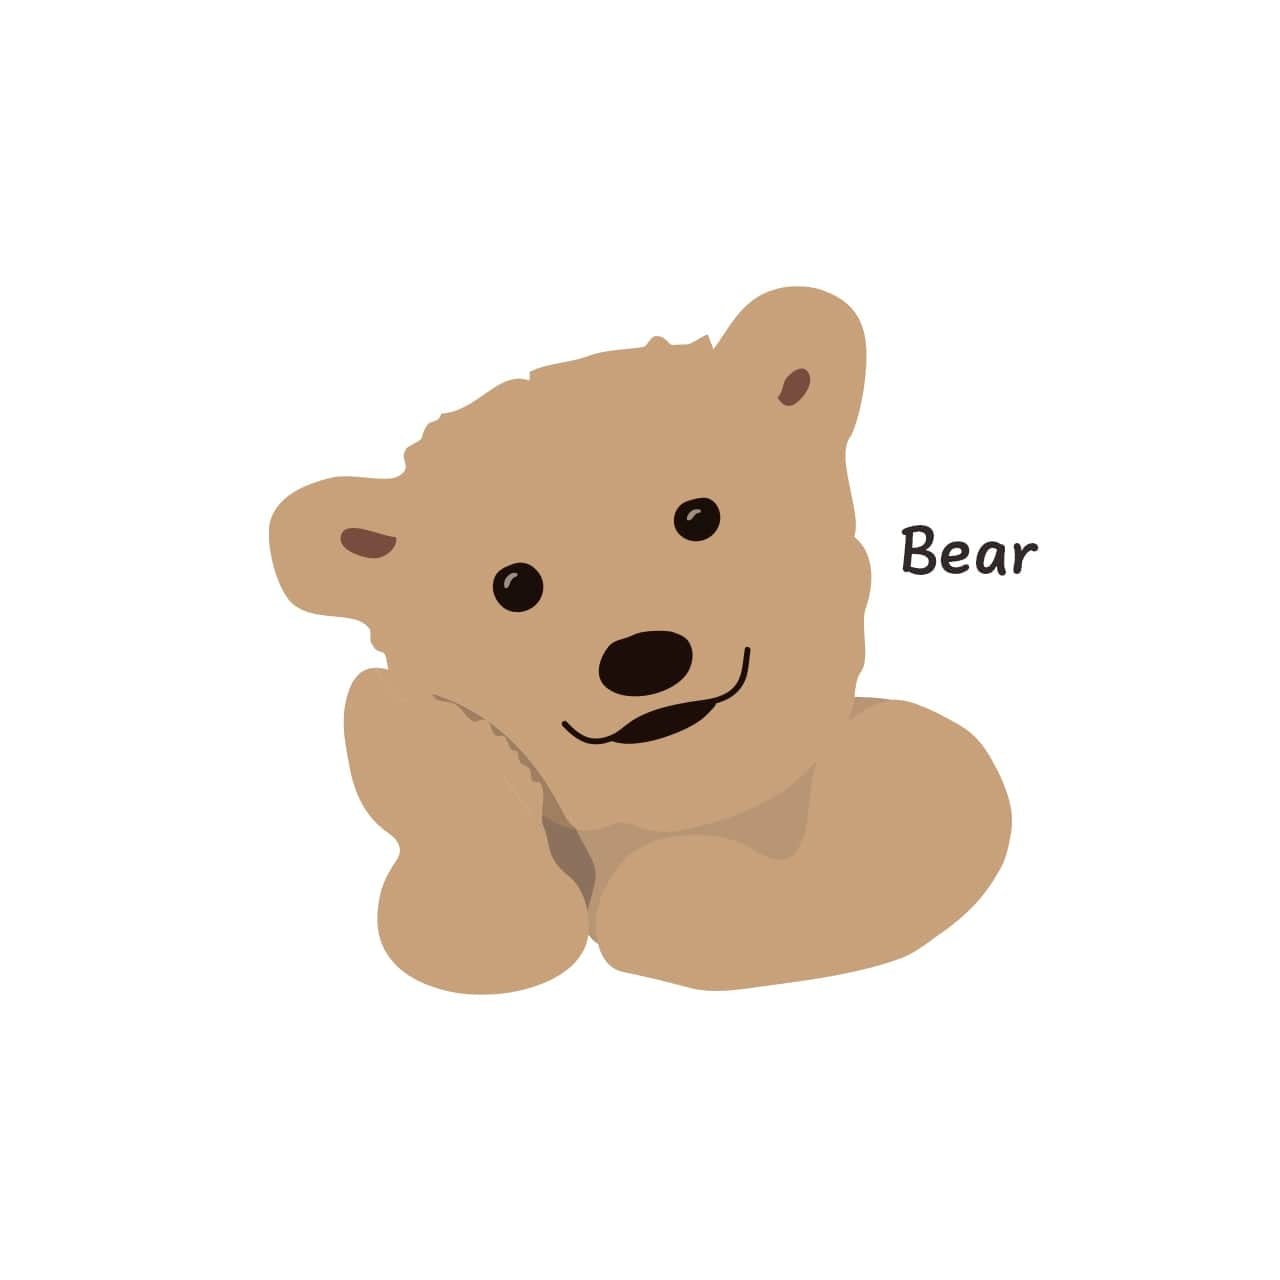 韓国 スマホケース Bear かわいい くま イラスト キャラクター デザイナーズ Iphone Android 携帯カバー 熊 ベアー くまネイビー B01 韓国スマホケース専門店 Korean Case